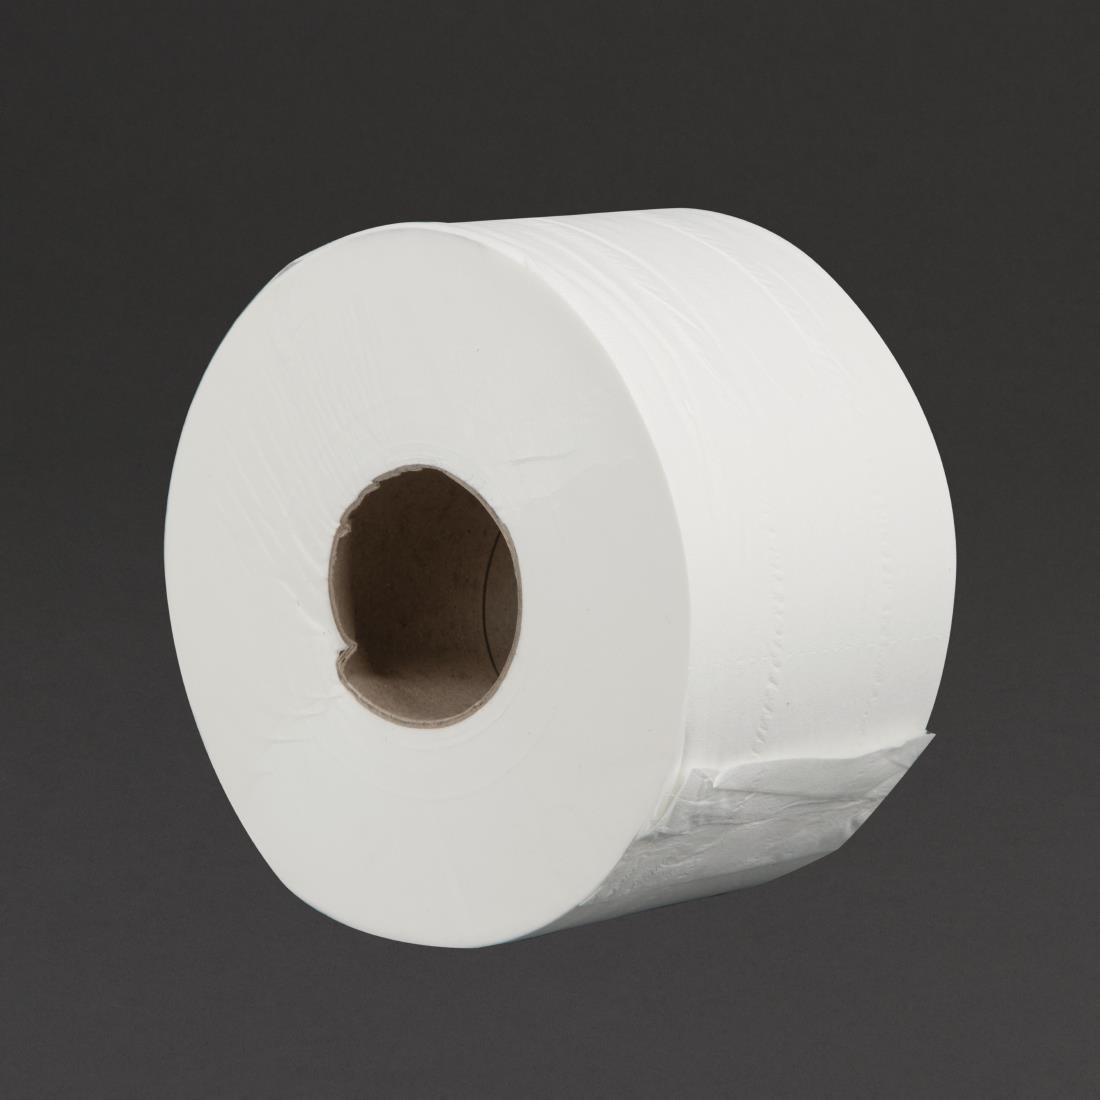 Mini Jumbo Biodegradable Paper Toilet Roll, 2 Ply-120m